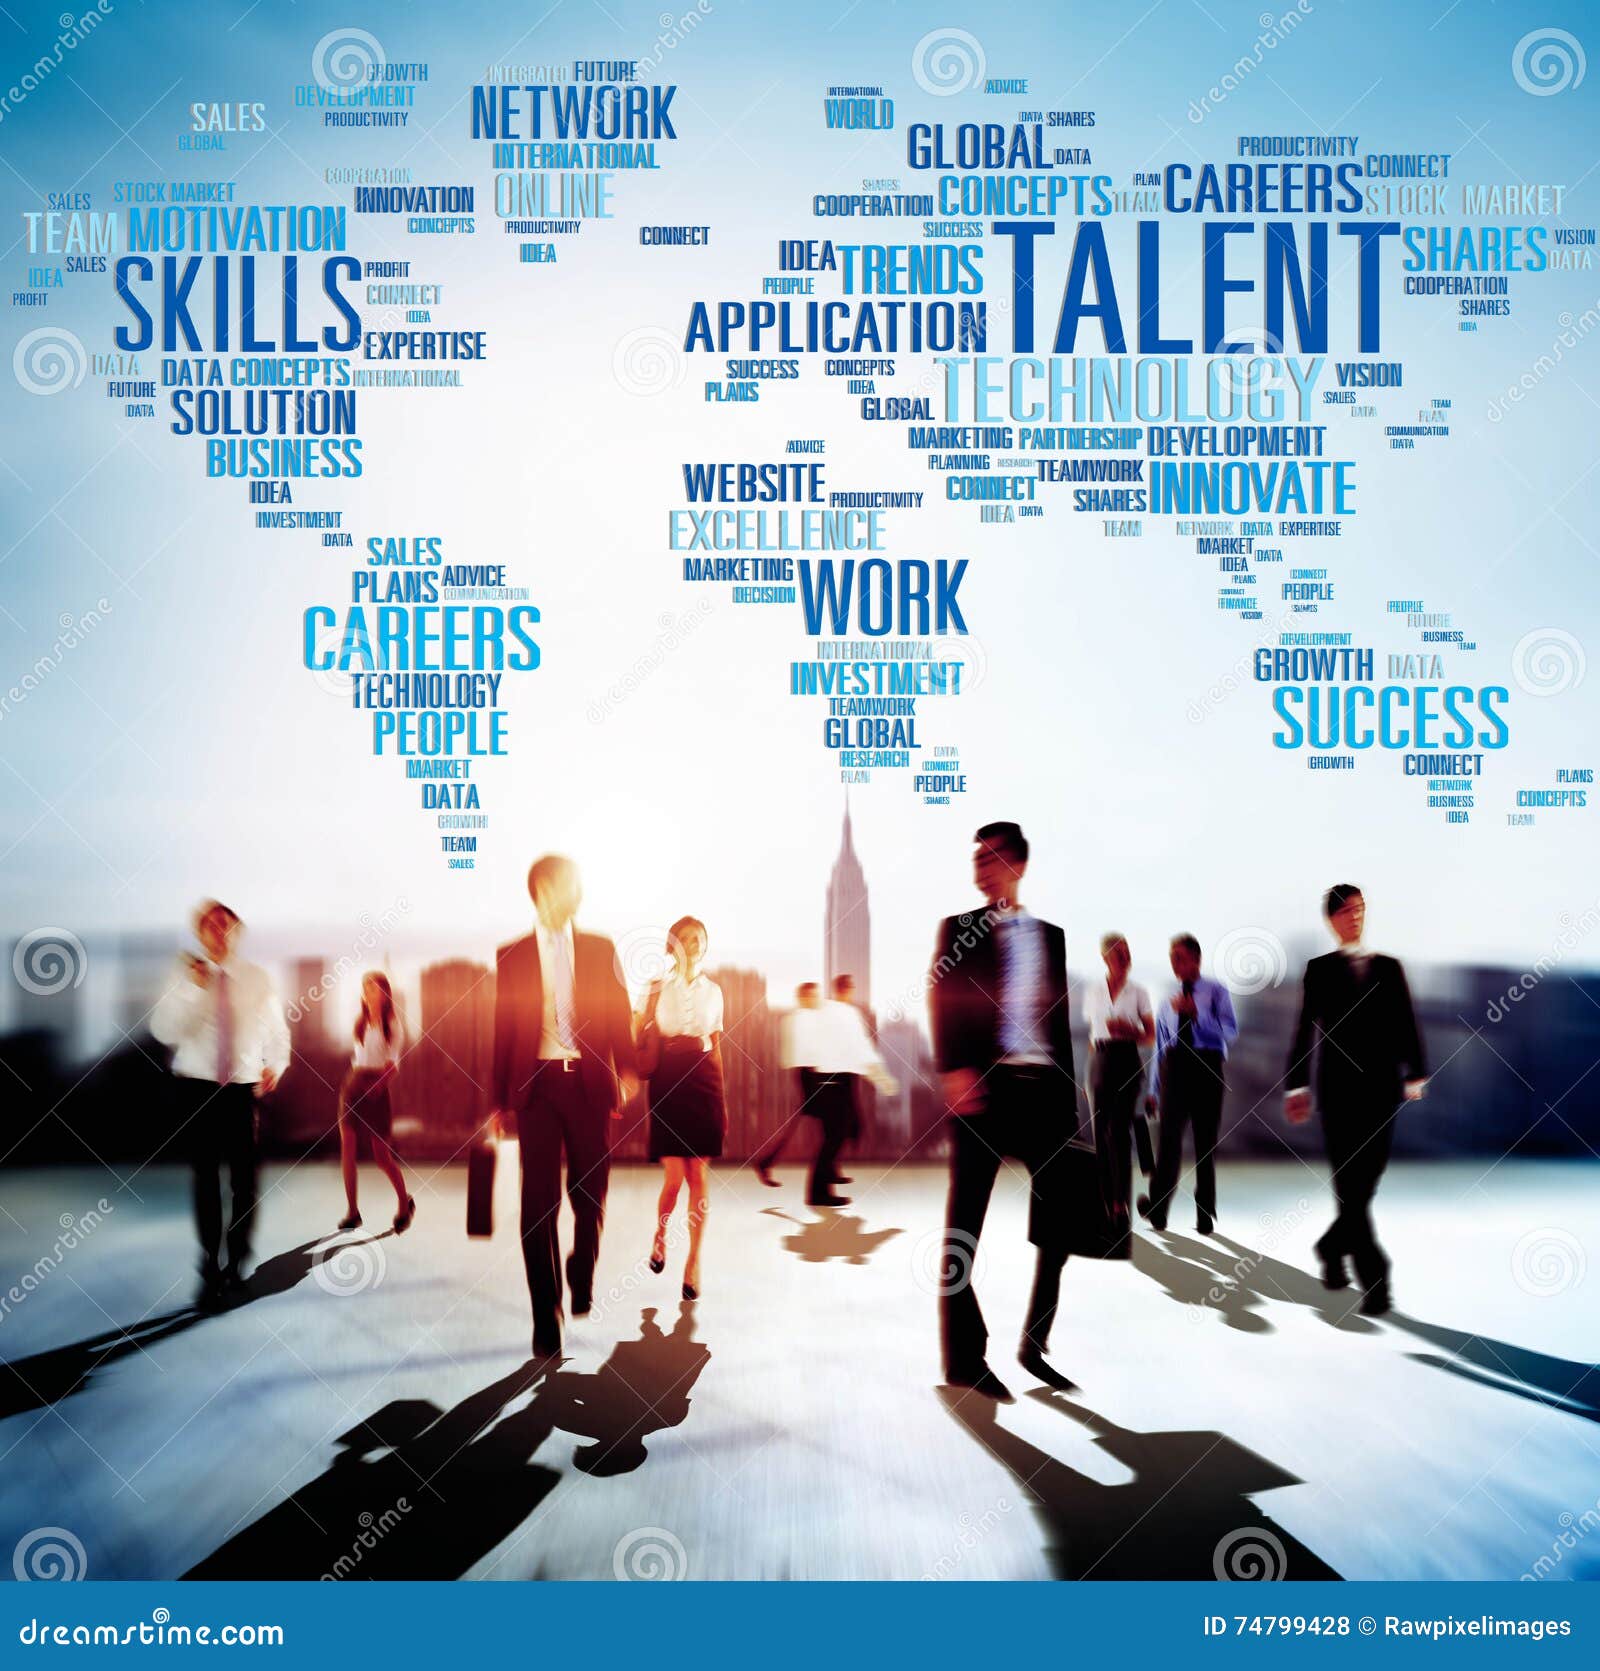 talent expertise genius skills professional concept